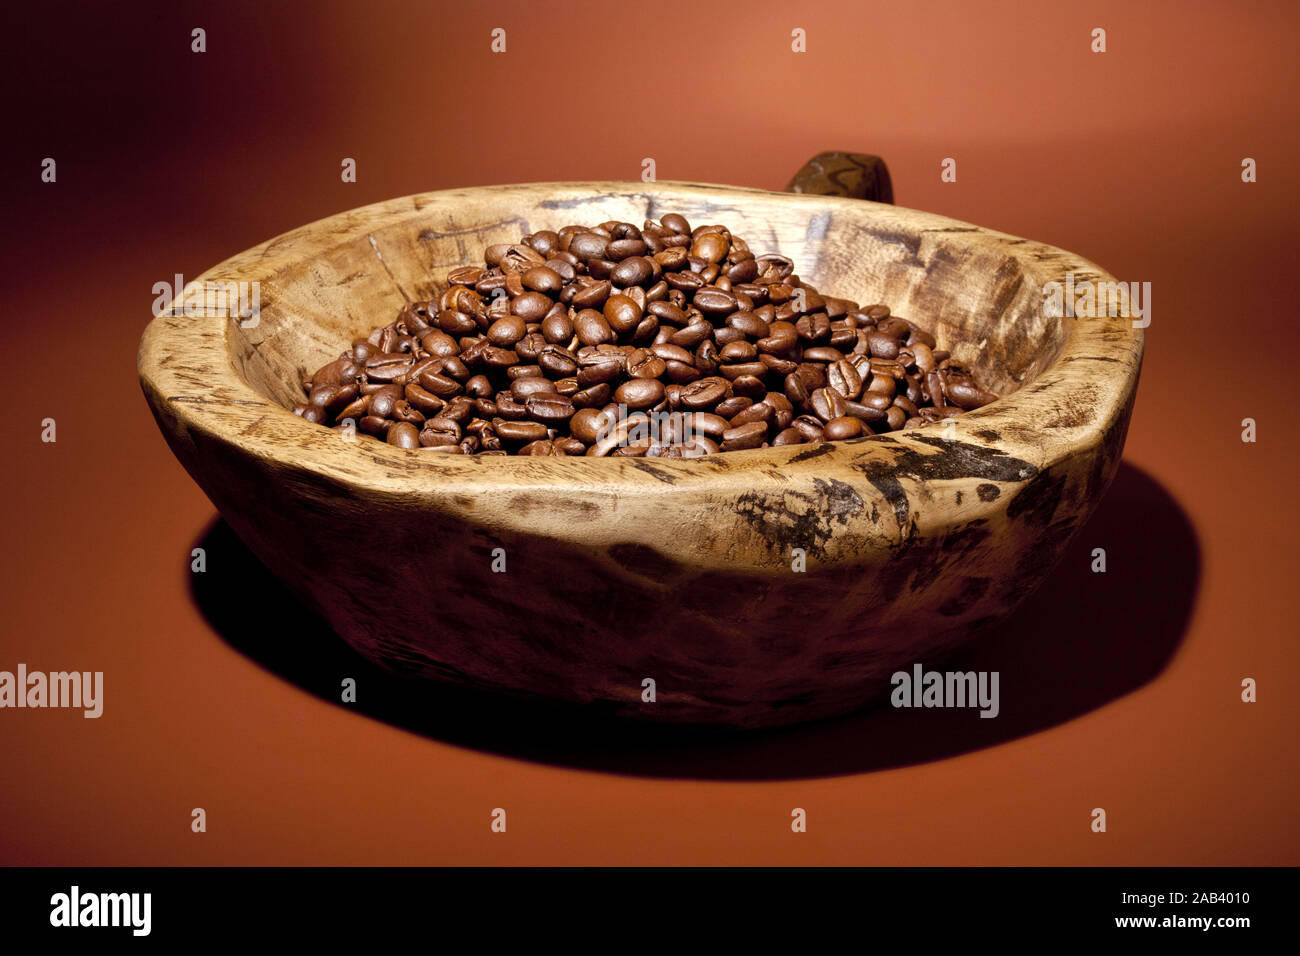 Holzschale mit frisch geroestete Kaffeebohnen |ciotola di legno di fresco con chicchi di caffè tostati| Foto Stock